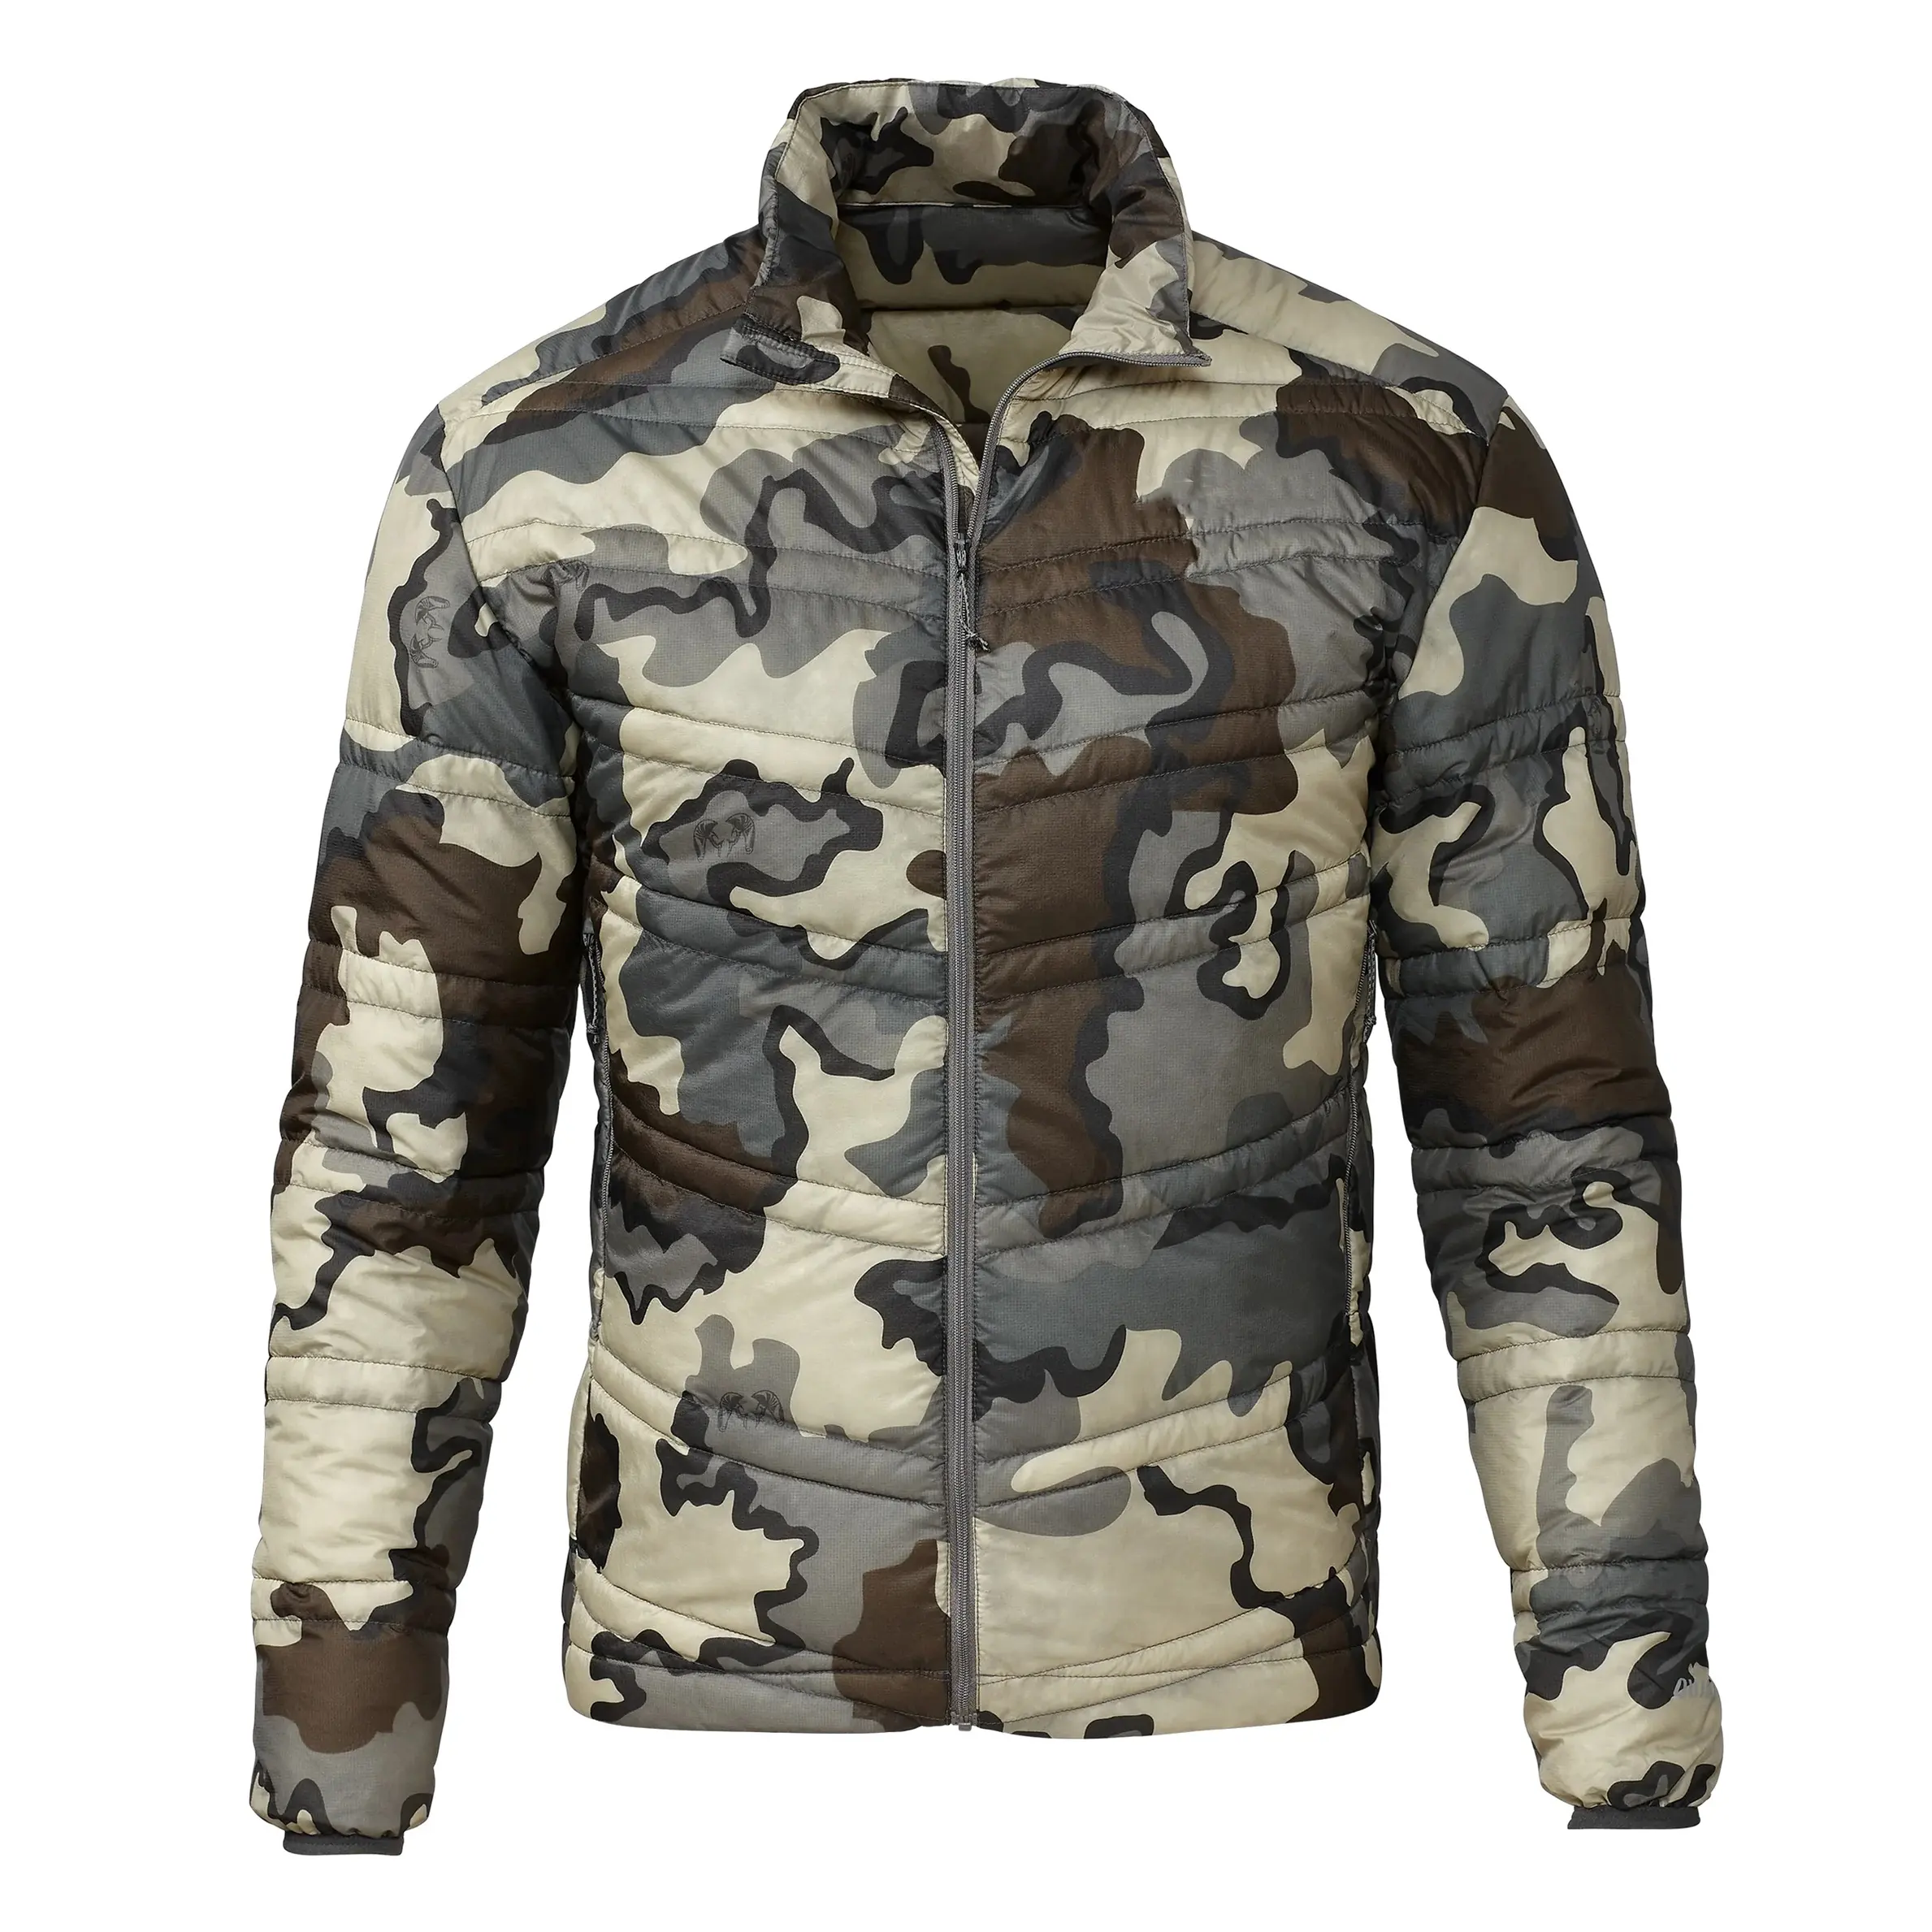 Jaqueta anti-camo masculina de caça, alta recomenda multi-camo, ao ar livre, personalizada, bordada, logotipo, preço barato, caça, inchaço